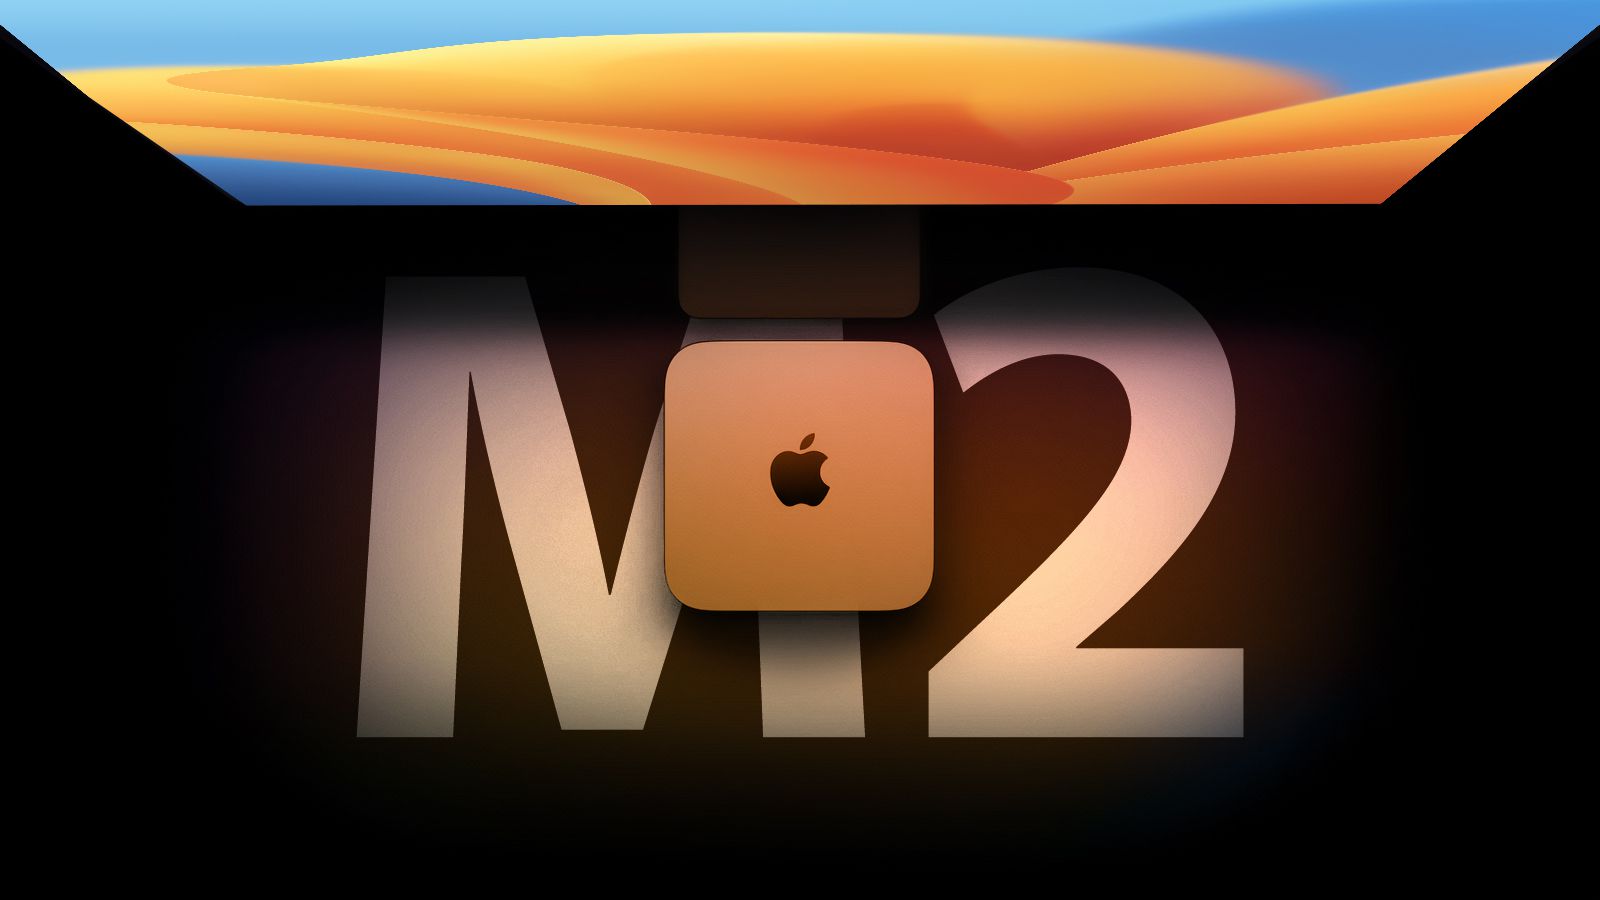 MacBook Pro và Mac Mini M2 Pro có thể sẽ ra mắt trong tháng 11